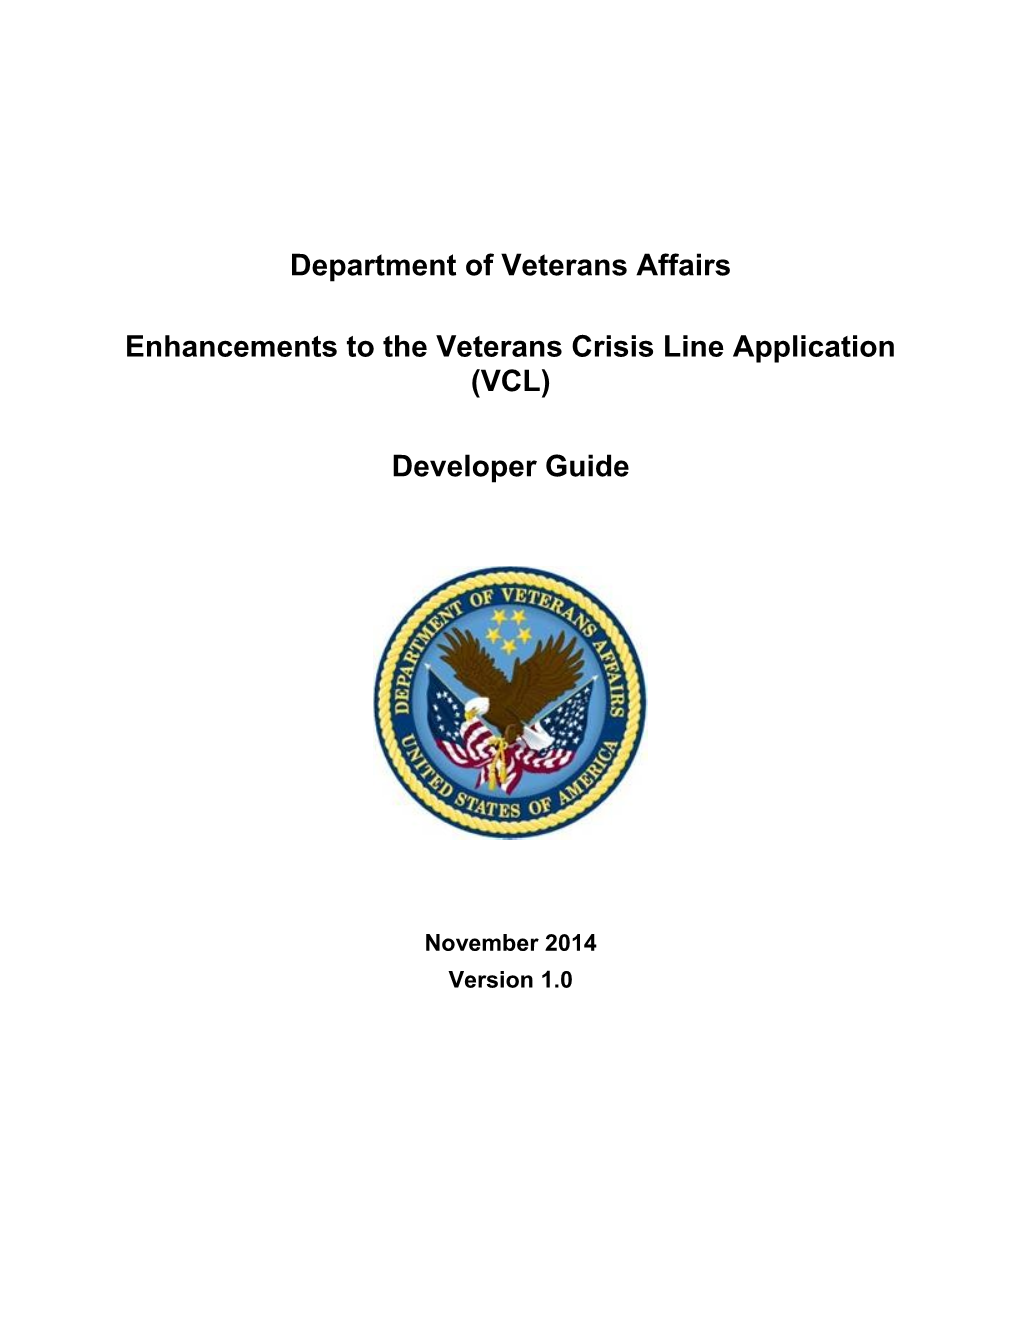 Enhancements to the Veterans Crisis Line Application (VCL)